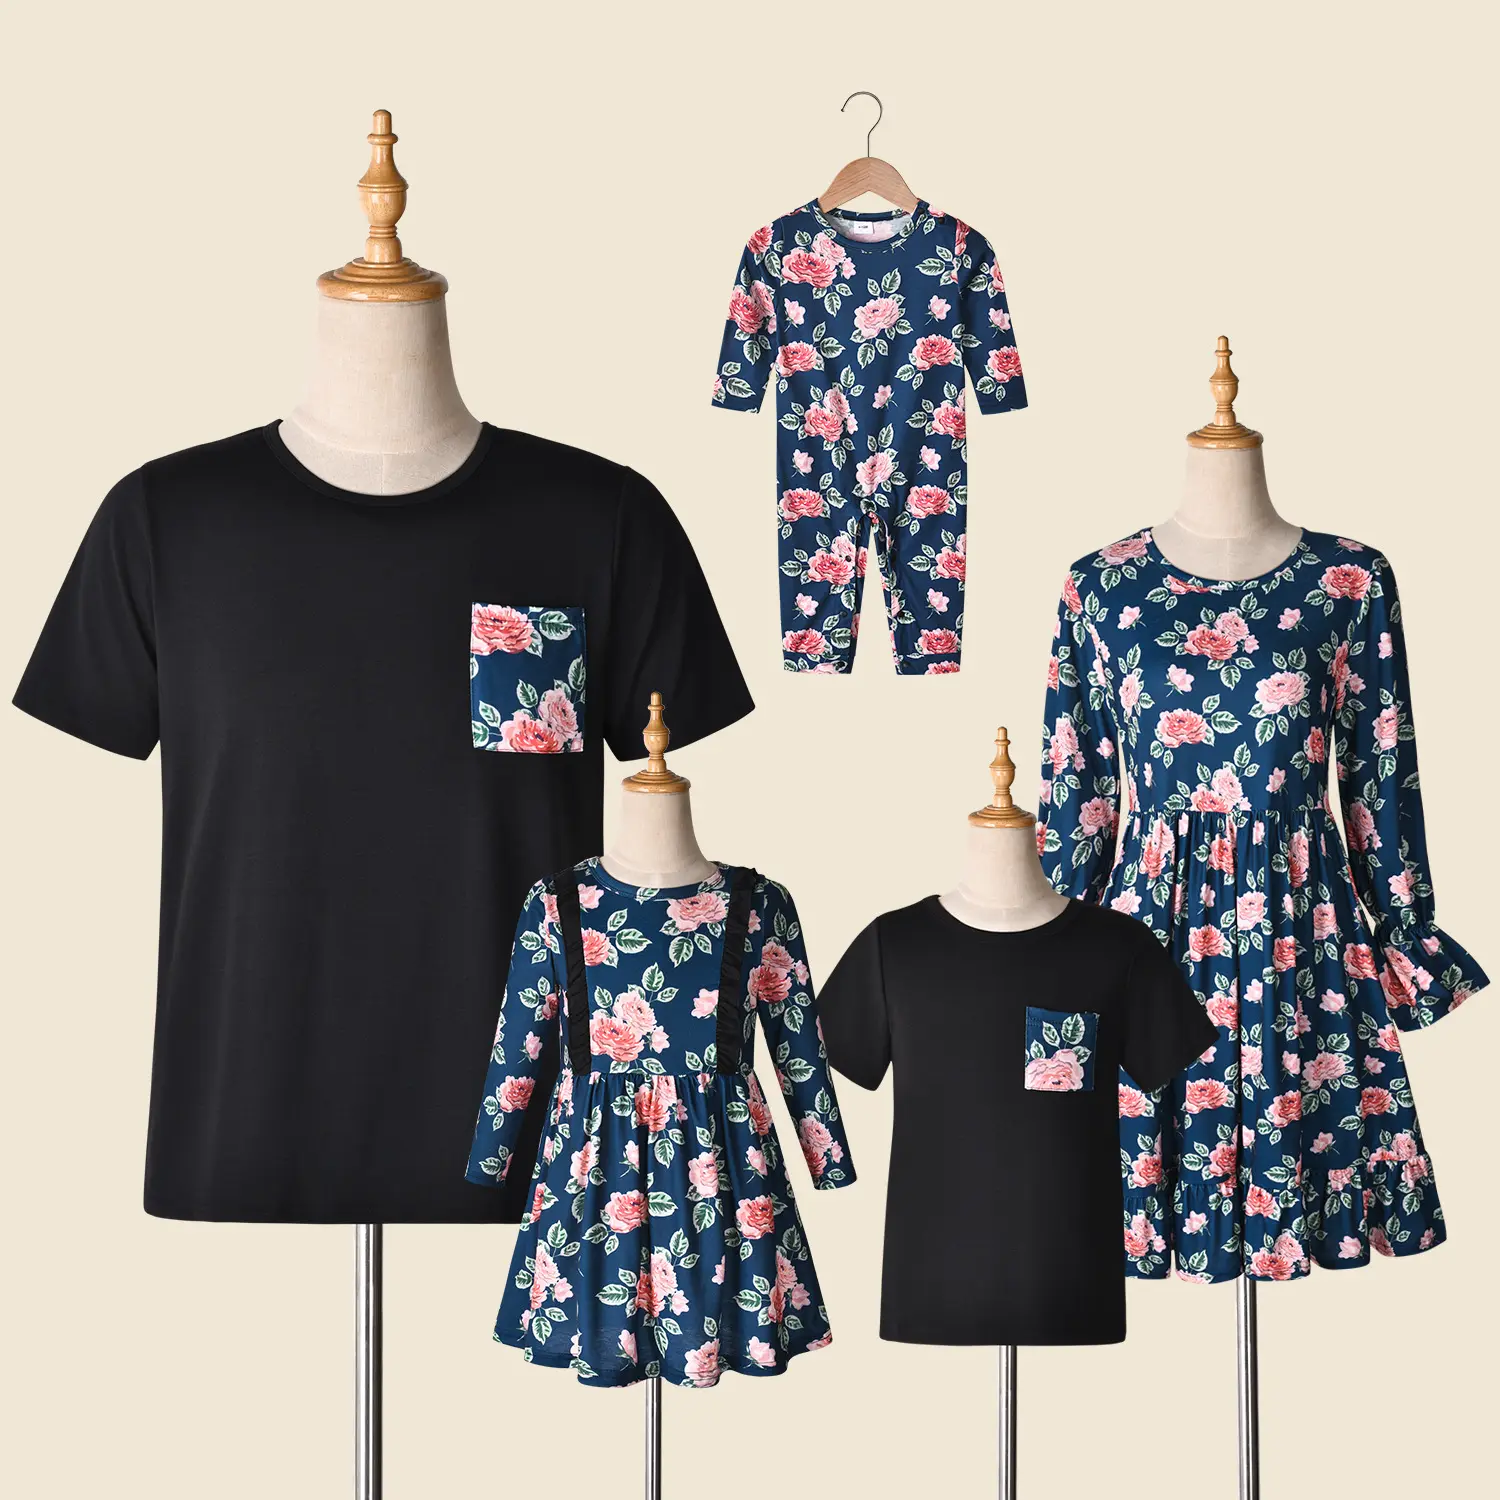 Yeni tasarım çiçek baskı ebeveyn-çocuk aile elbise T shirt Romper giyim